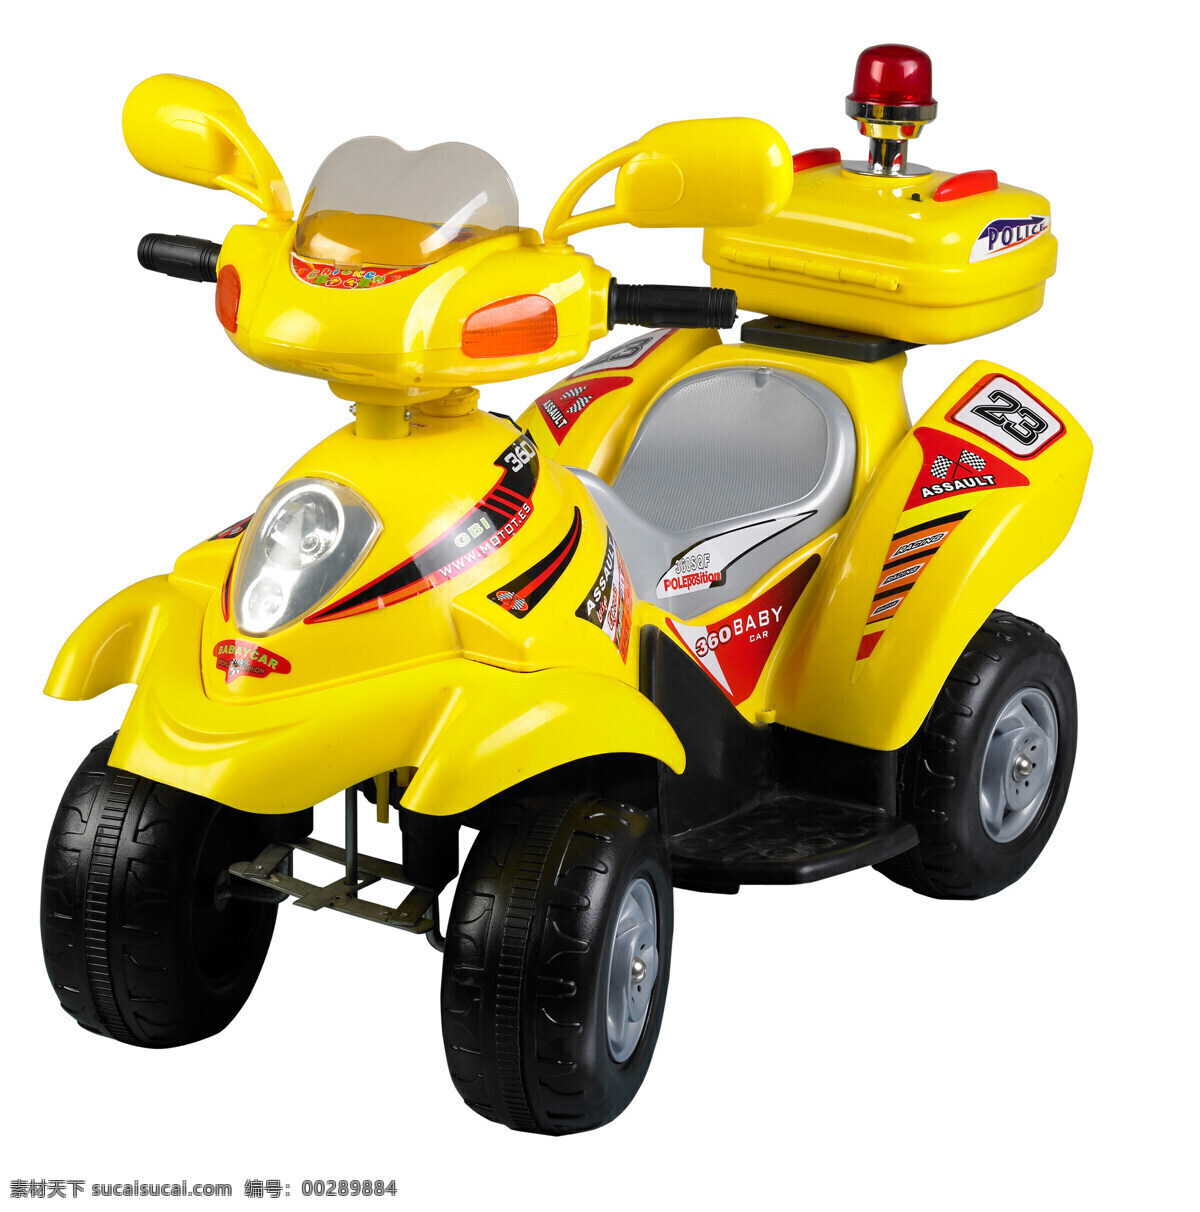 玩具车 车轮 黄色 可爱 模型车 童年 玩具 小车 设计素材 模板下载 psd源文件